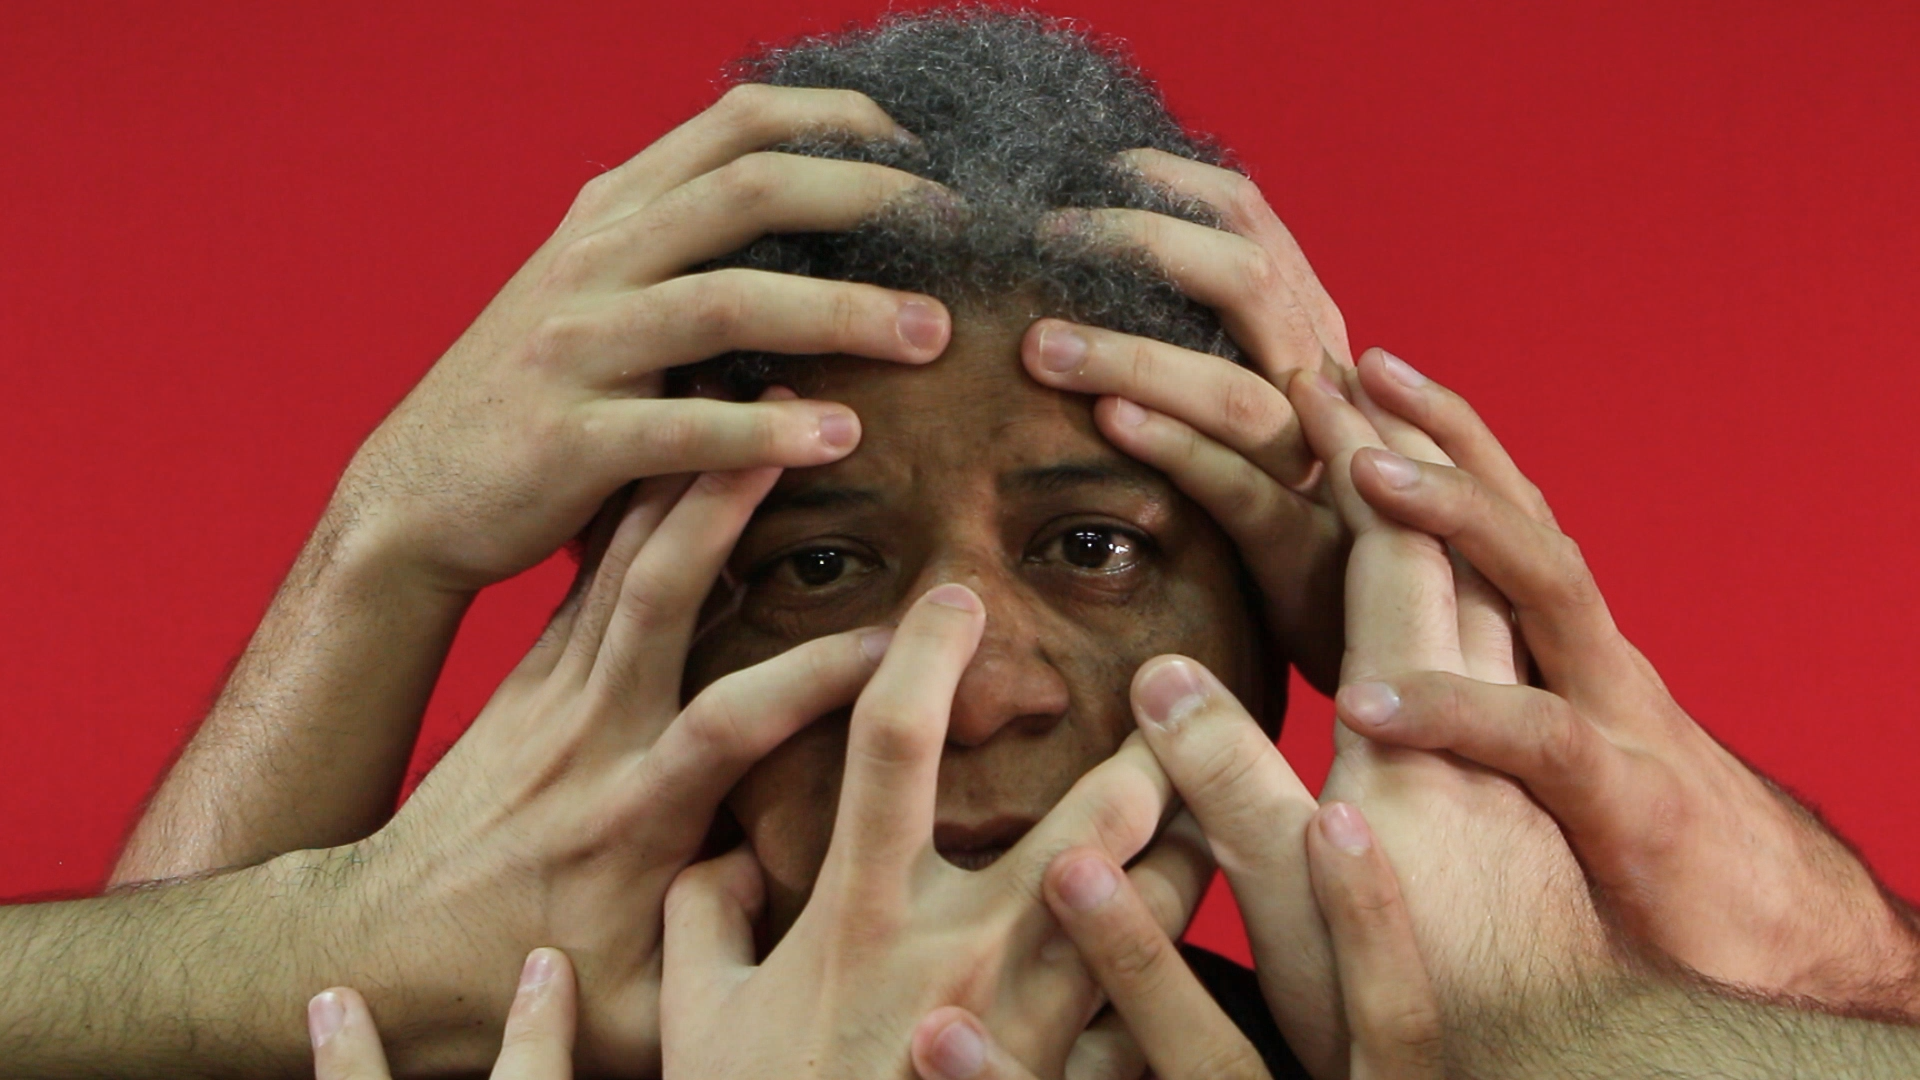 fotografia de uma mulher negra olhando para a frente e com várias mãos brancas sobre seu rosto